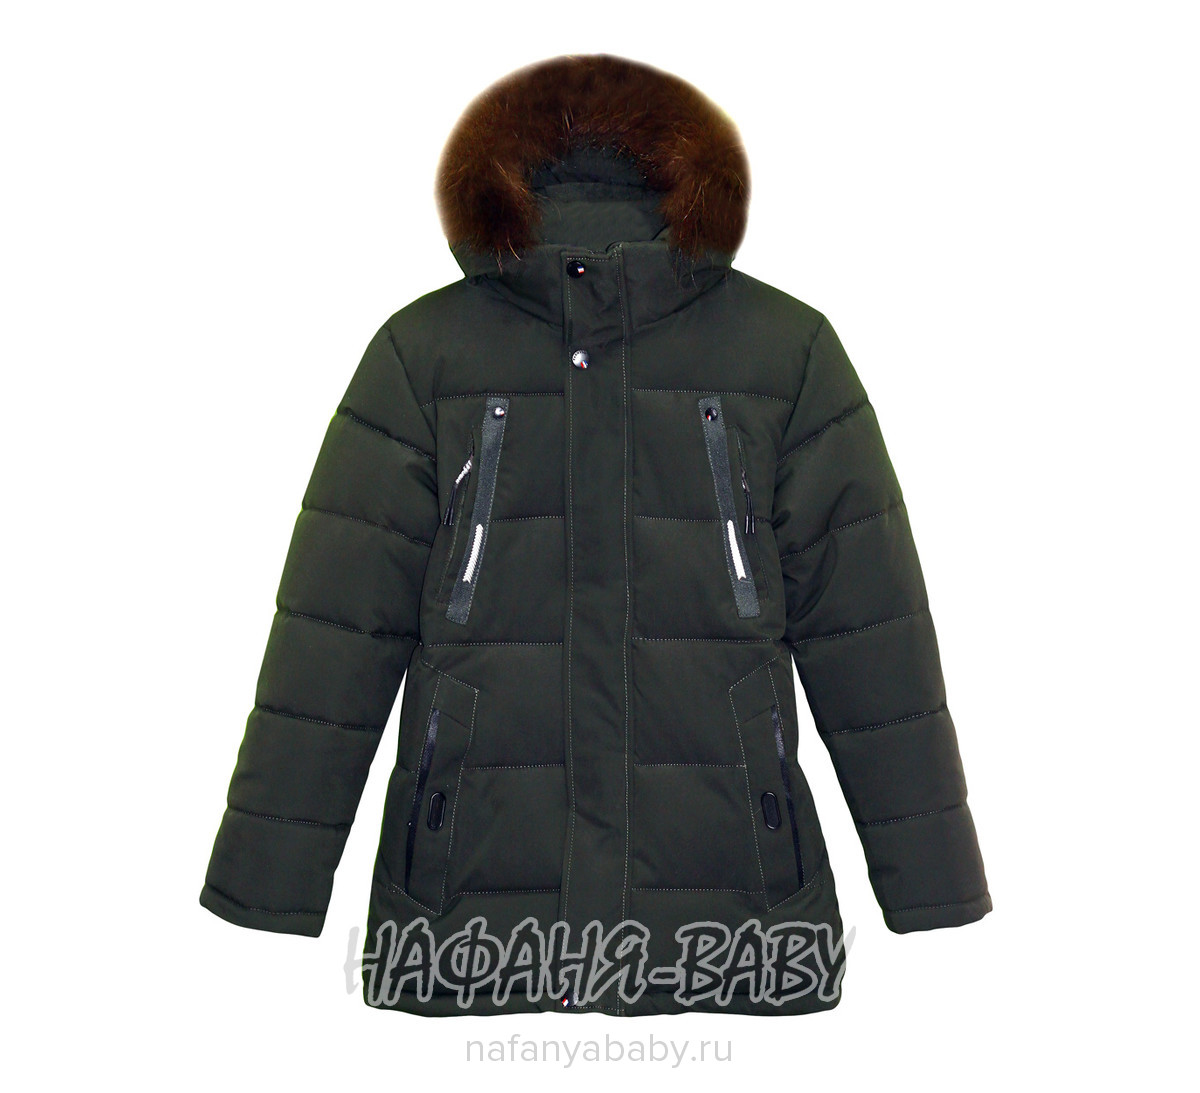 Подростковая зимняя удлиненная куртка + наушники Ф*А арт: 582, 10-15 лет, оптом Китай (Пекин)